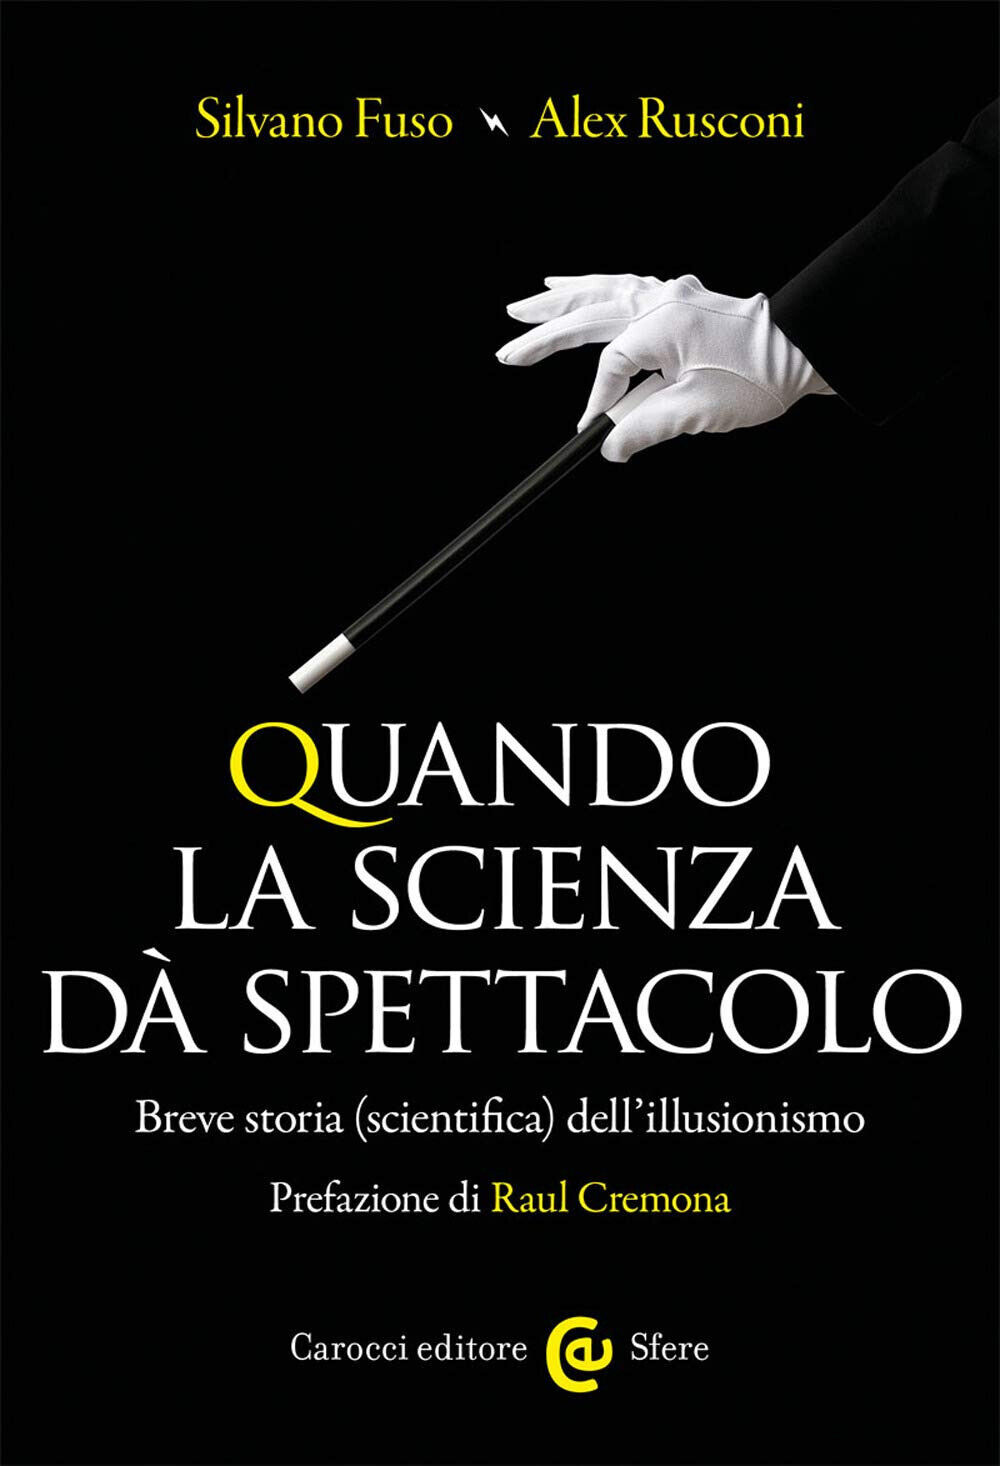 Quando la scienza d? spettacolo - Silvano Fuso, Alex Rusconi - Carocci, 2020